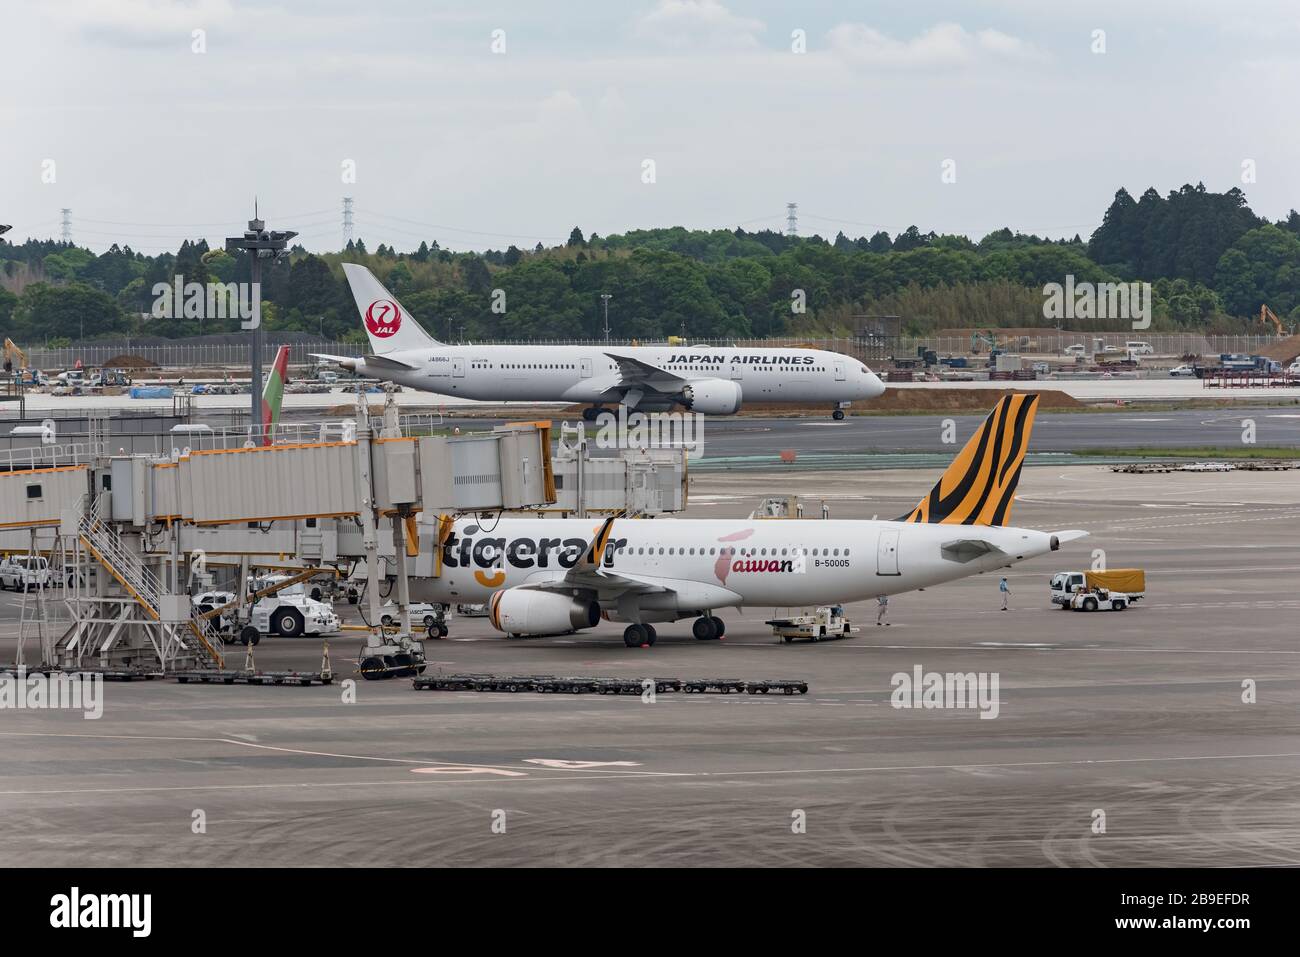 Narita, Japón - 15 de mayo de 2019: Sosteniendo un delantal del Aeropuerto Internacional de Narita, aviones de Japan Airlines y Tigerar Airlines están esperando para despegar. Foto de stock